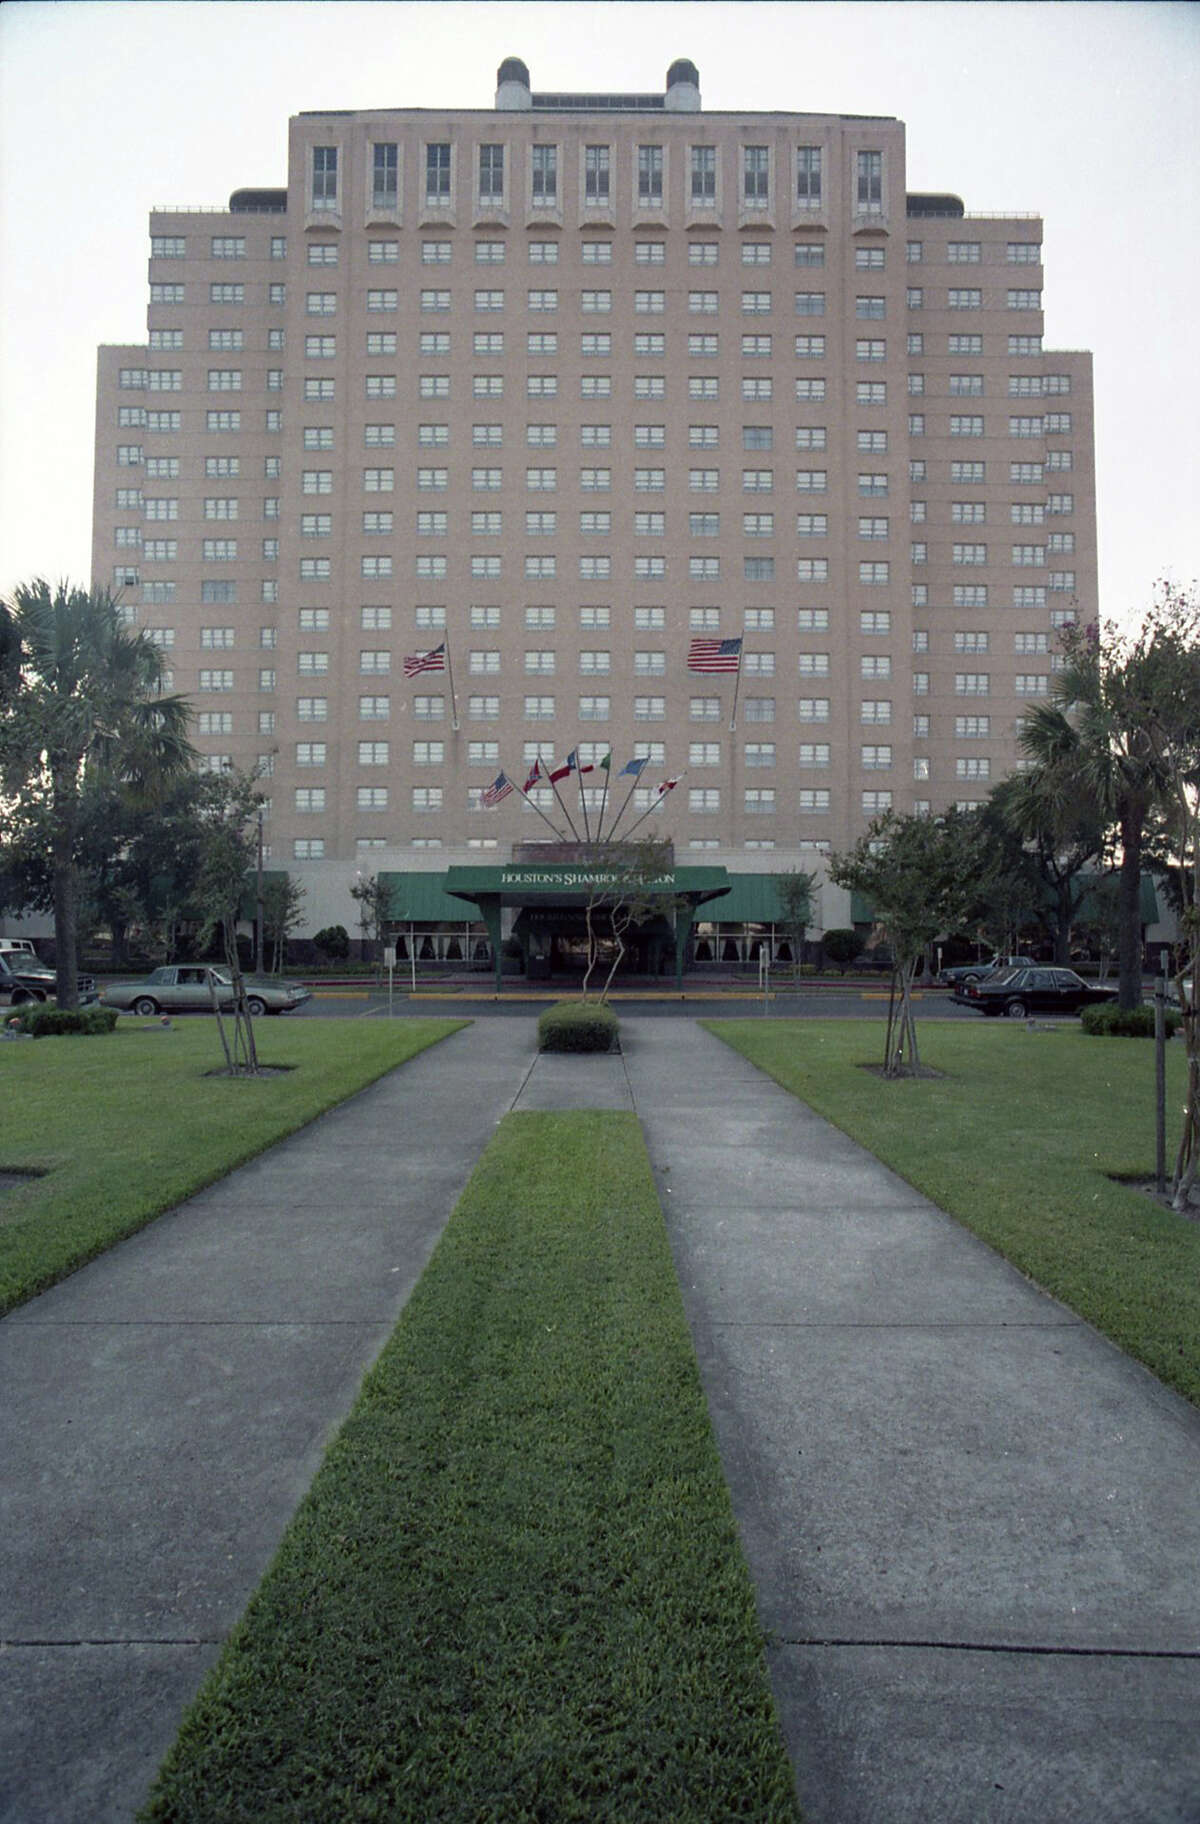 Shamrock Hilton Hotel, Oct. 4, 1985.